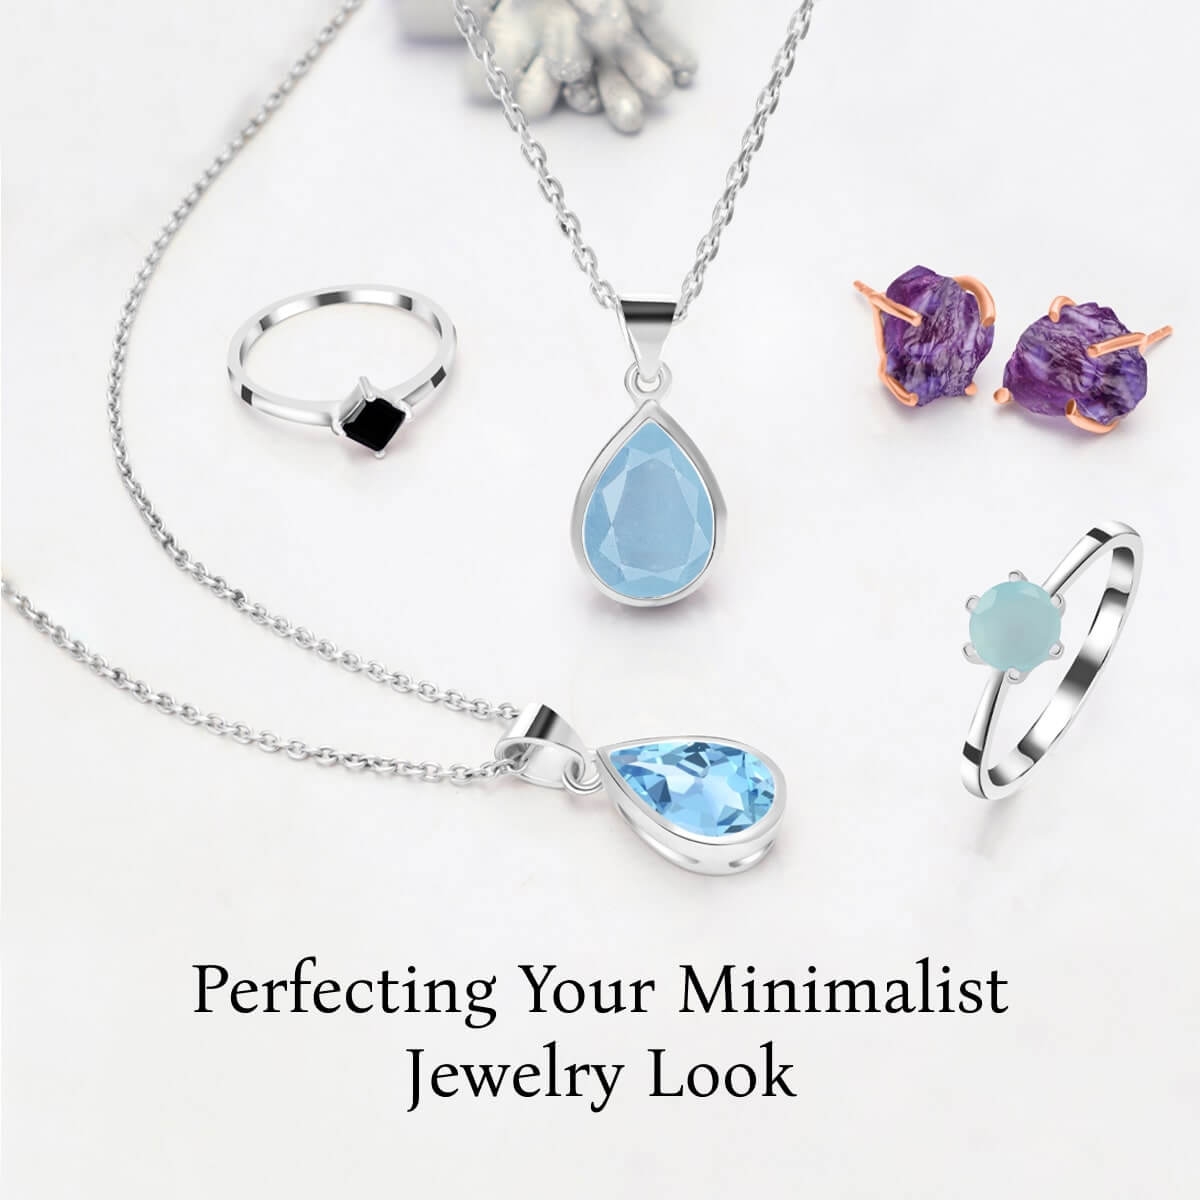 How to Wear Minimalist Jewelry?